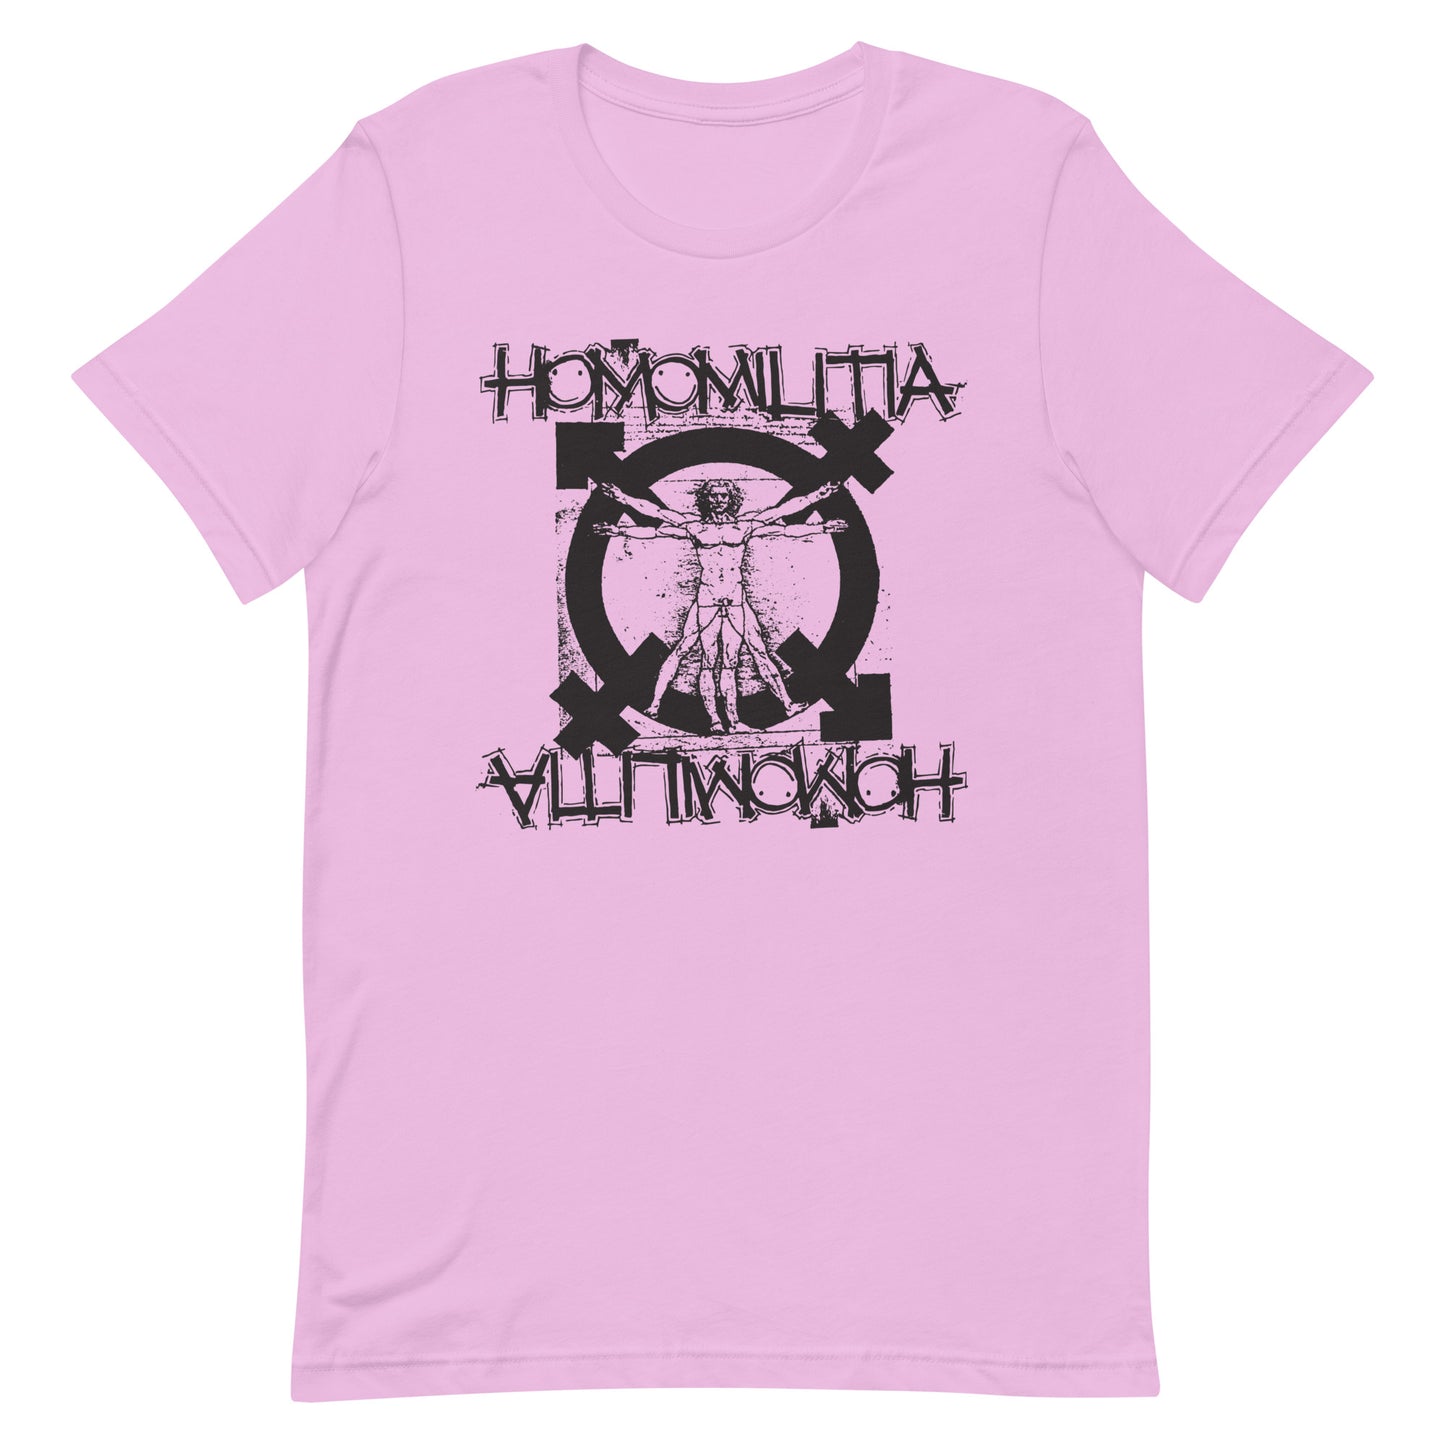 Homomilitia T-Shirt